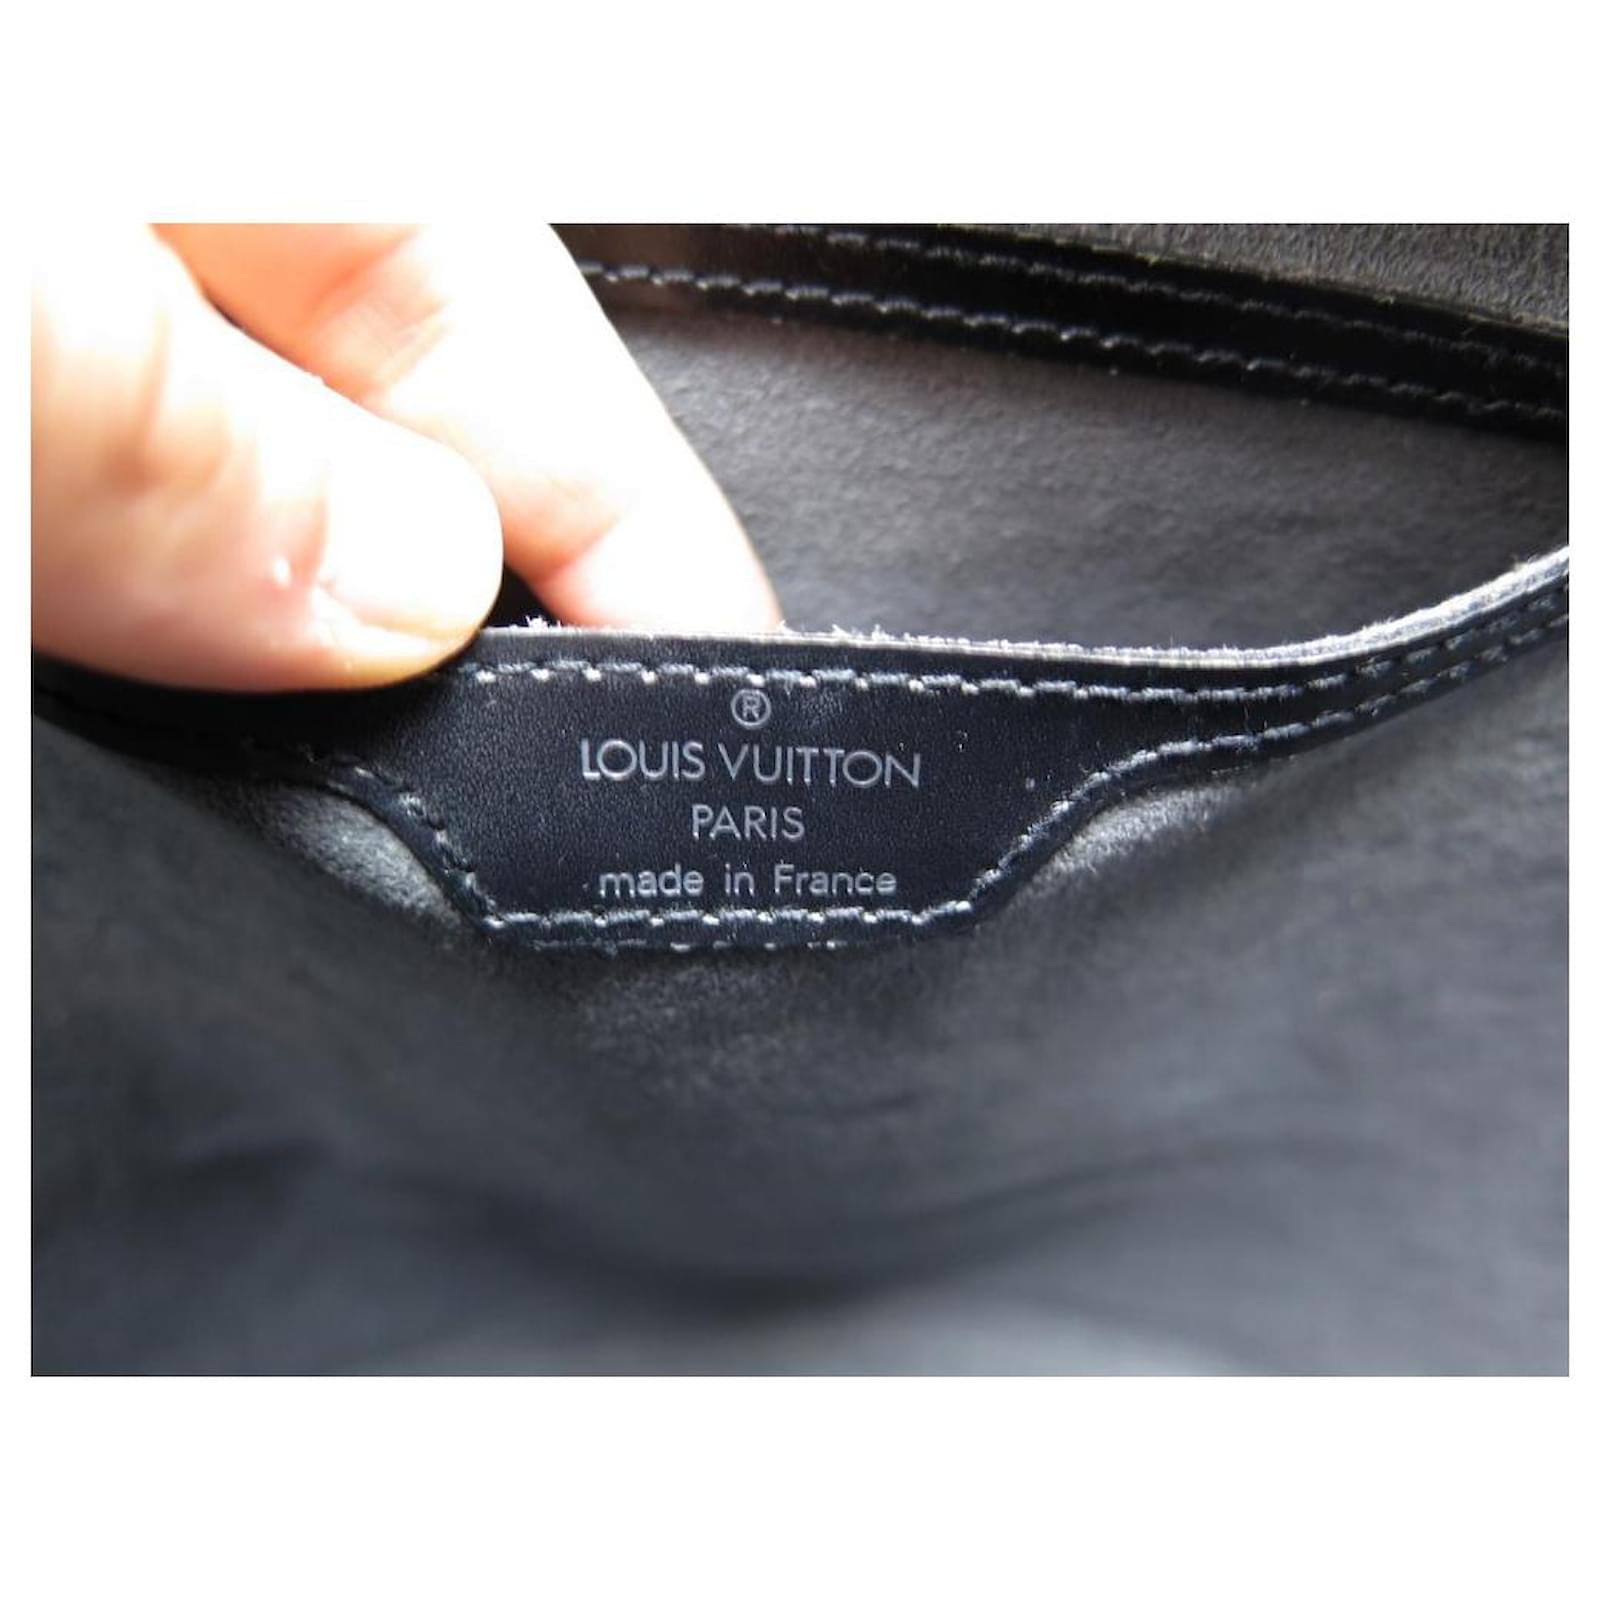 Bolso de mano Louis Vuitton Saint Jacques modelo pequeño en cuero Epi negro